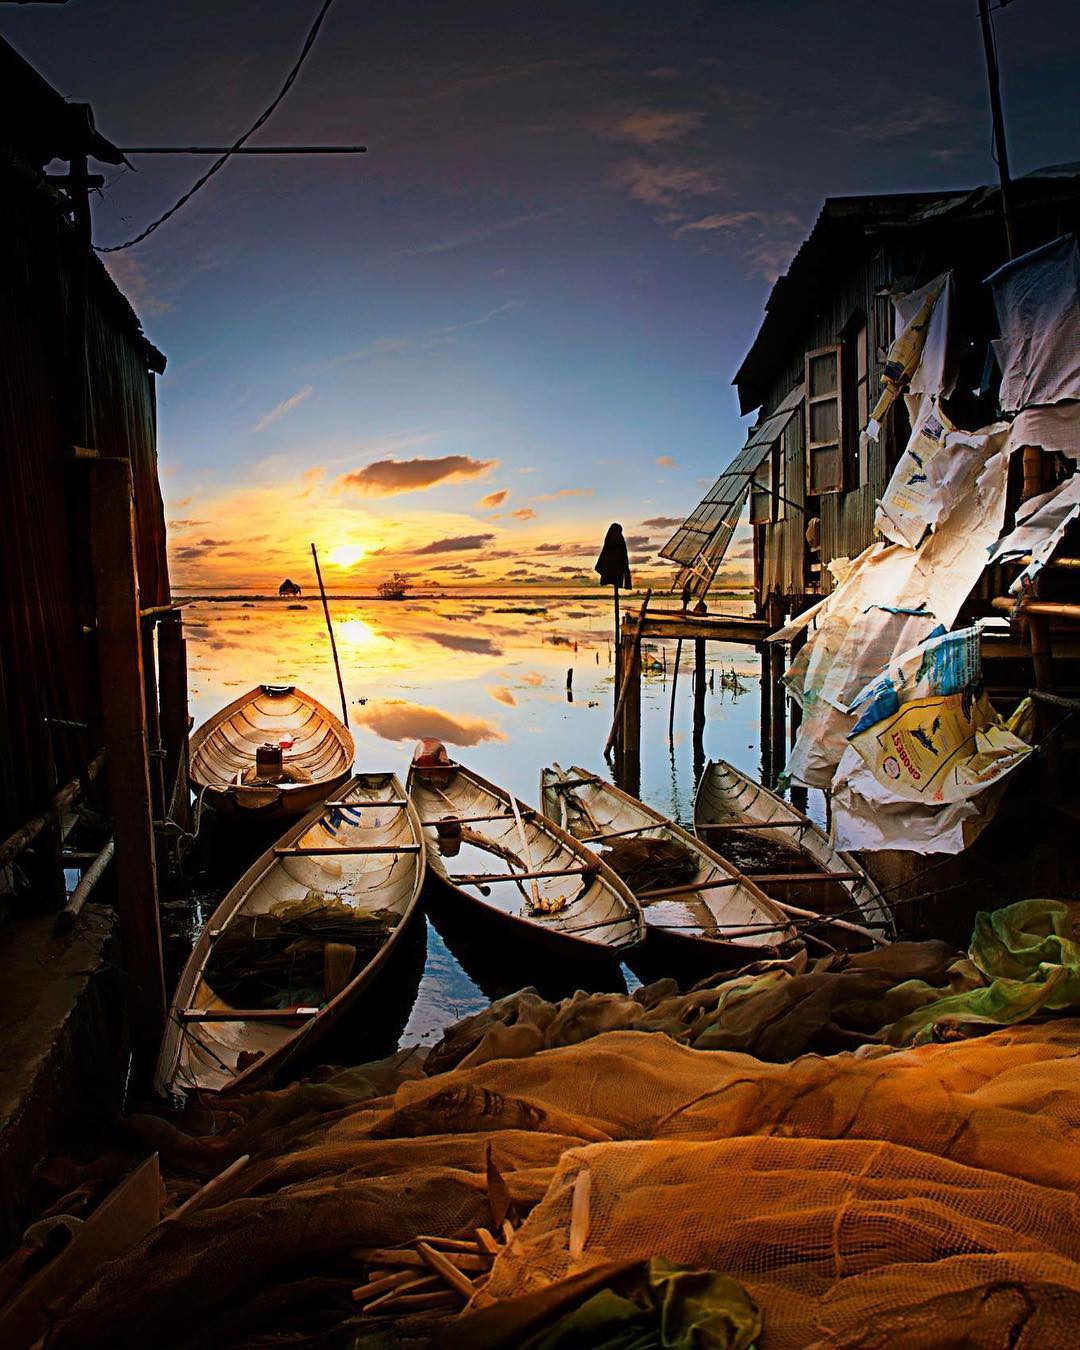 Vùng đầm phá mênh mông này từng được biết đến như một vùng quê nghèo khó. Nhưng ngày nay, phá Tam Giang đã được biết đến rộng rãi hơn, trở thành vùng sông nước xứ Huế hấp dẫn khách du khách với những hình ảnh bến đò lênh đênh sông nước nhuộm vàng bởi ánh nắng khi bình minh. Ảnh: @Vietnamwonders.